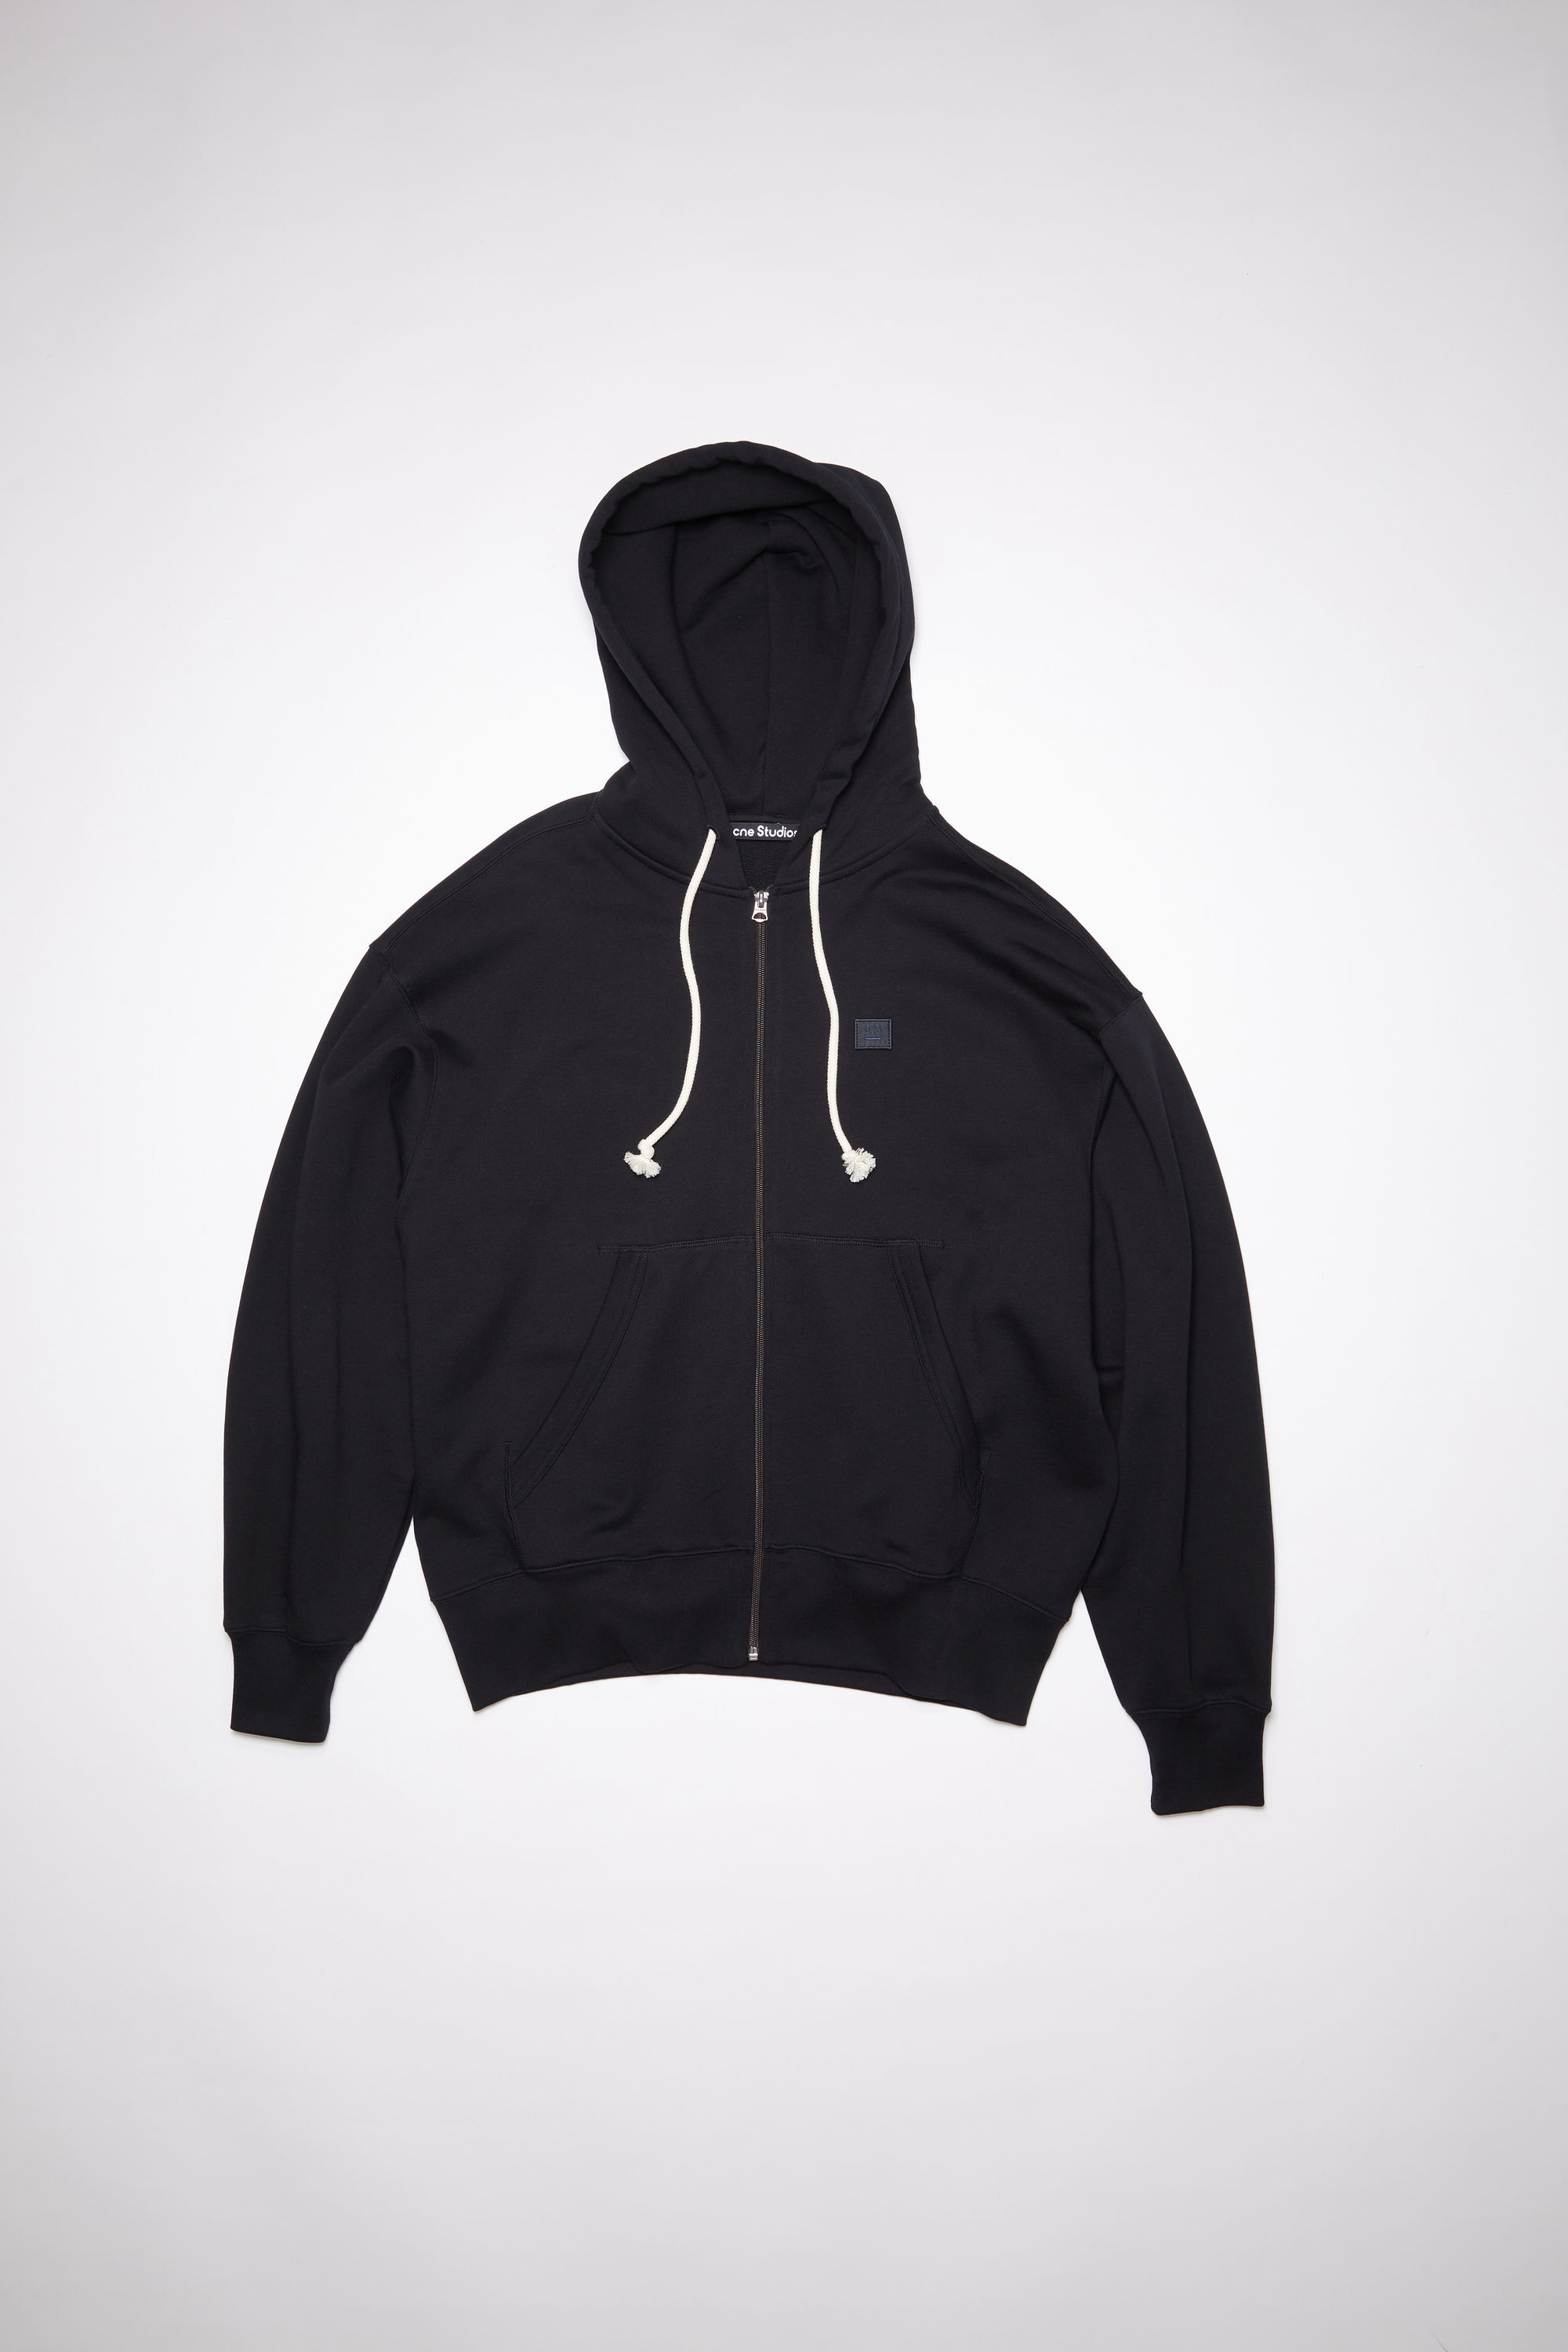 低価HOT ACNE Acne Studios black hoodie sizeXSの通販 by まつたけ's shop｜アクネならラクマ 